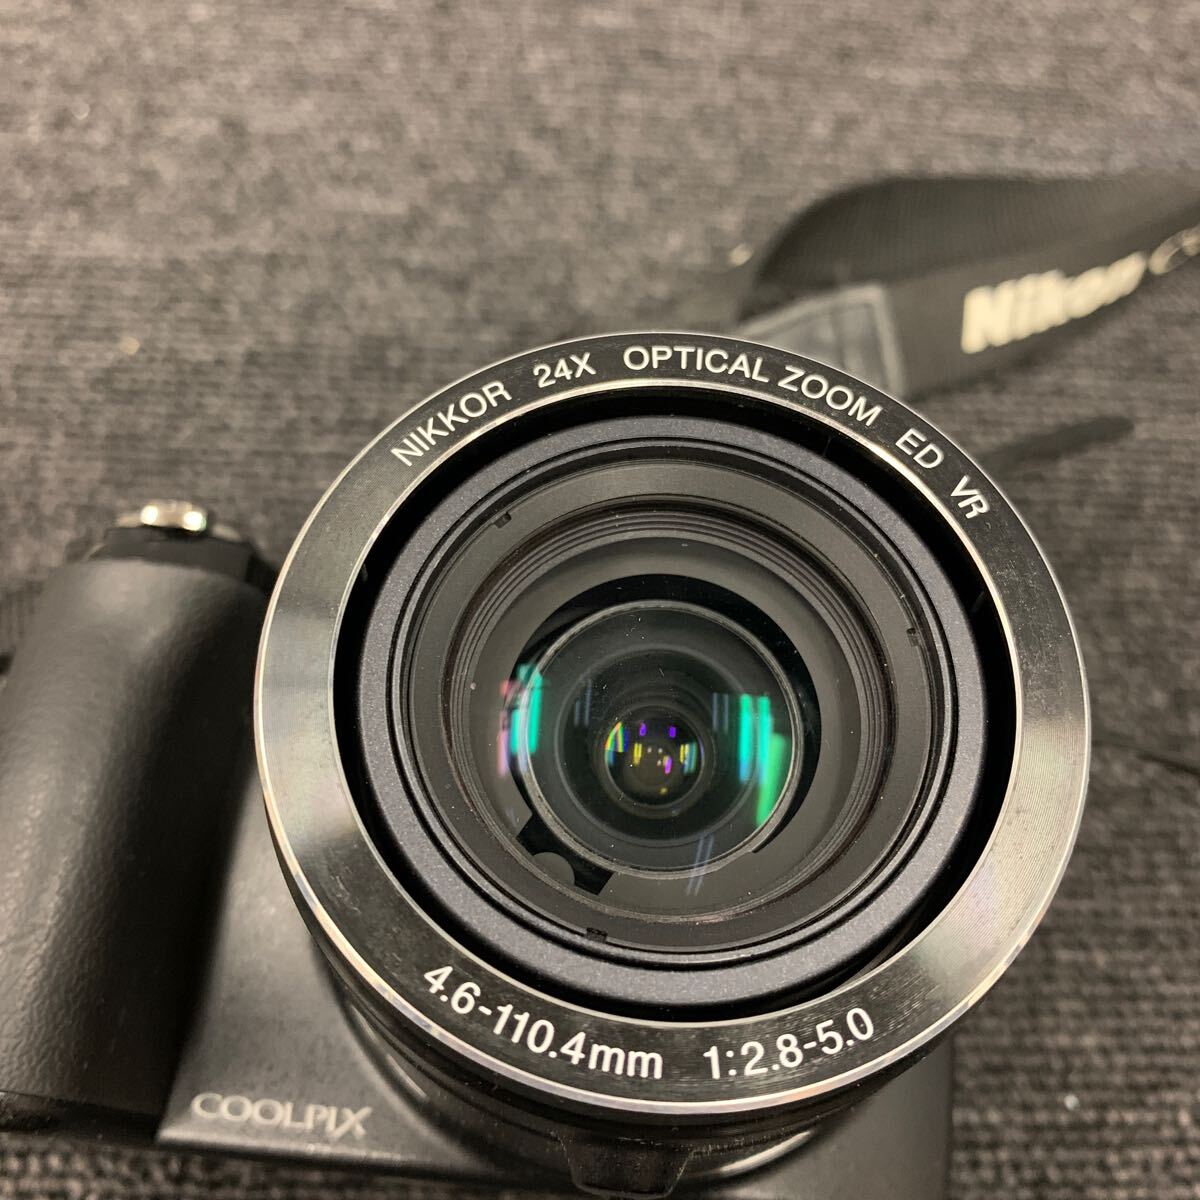 ■【売り切り】Nikon ニコン コンパクトデジタルカメラ COOLPIX P90 ブラック 4.6-110.4mm 1:2.8-5.0の画像8